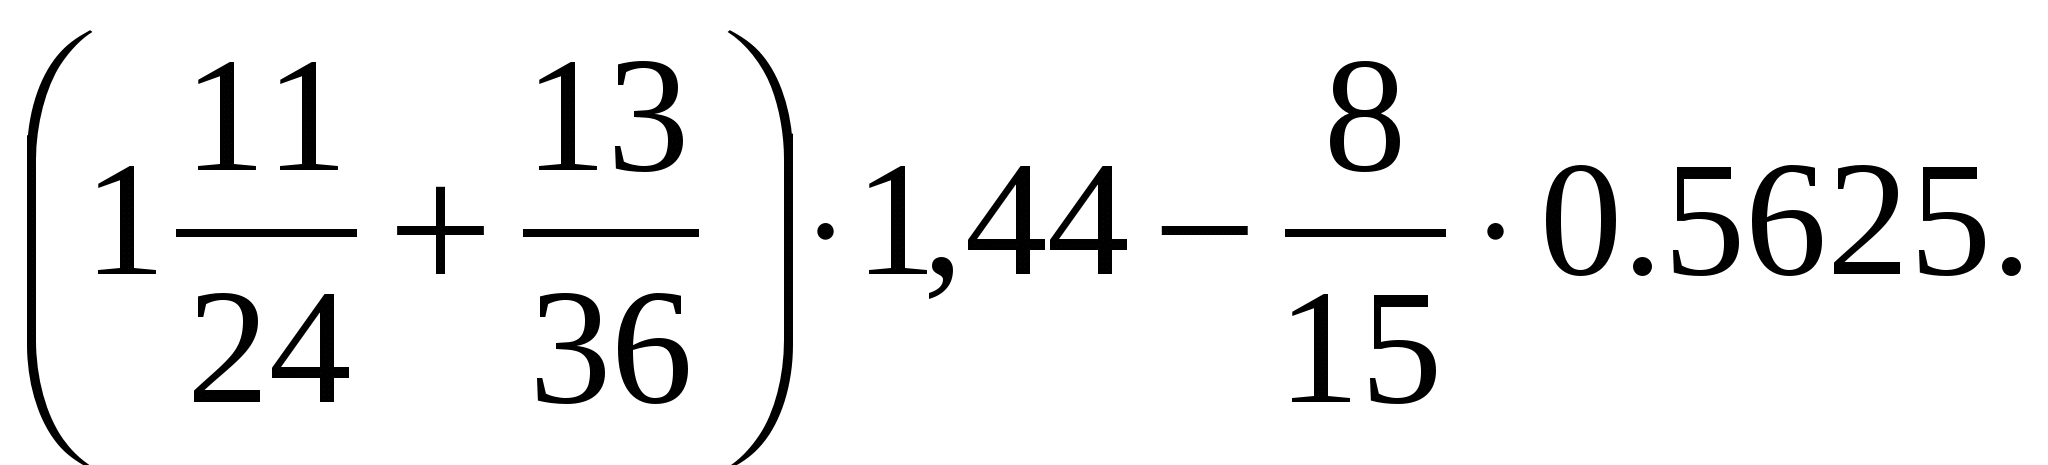 1 11 24 13 36